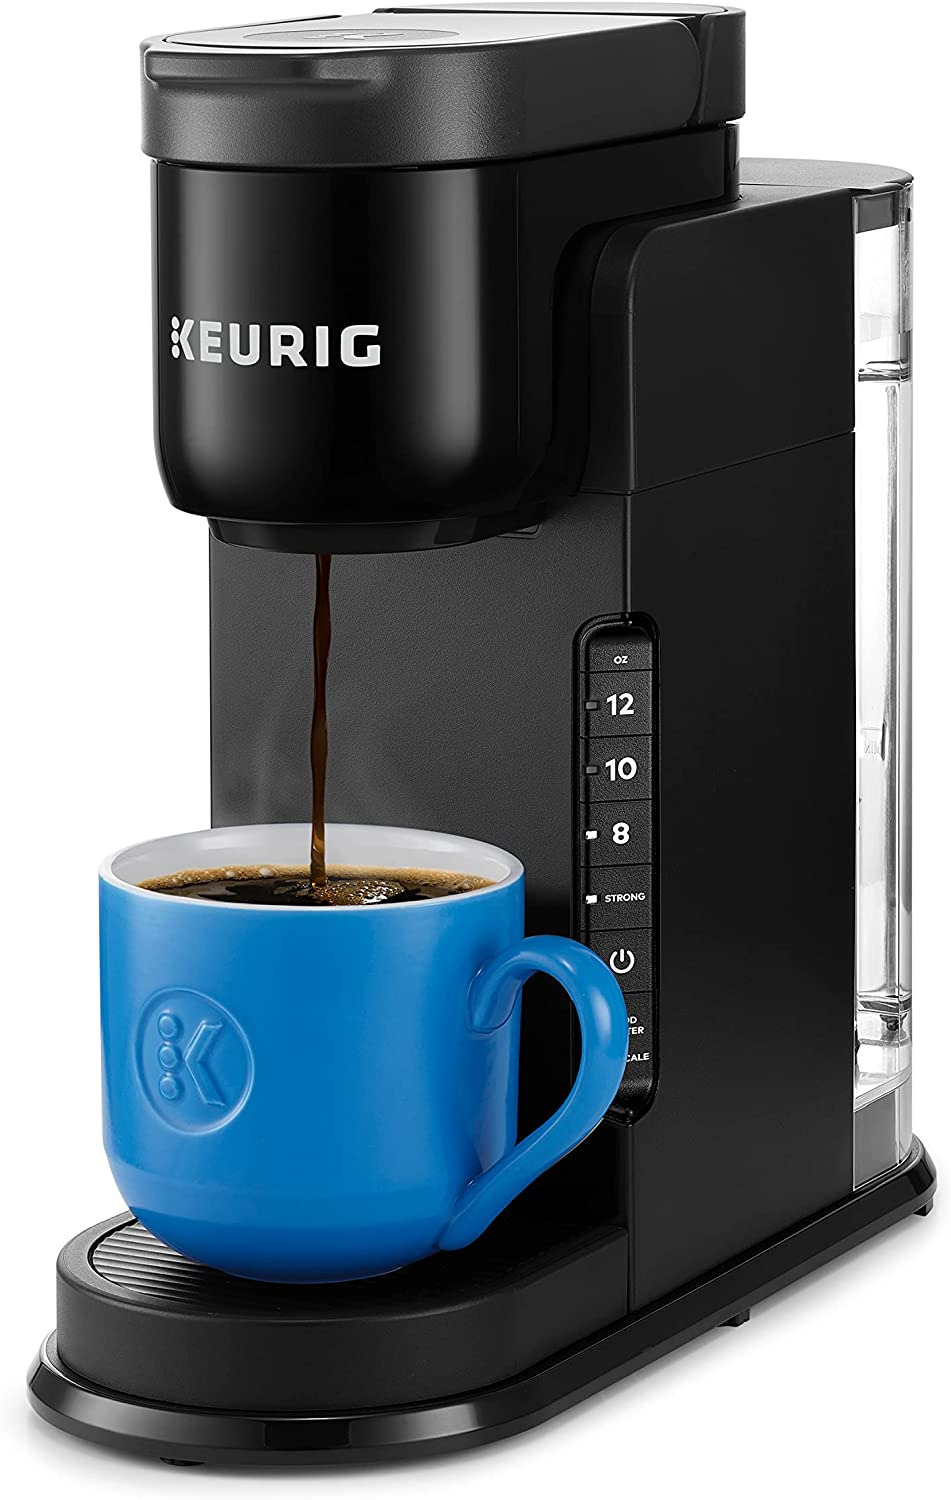 Keurig K-Express Single Serve Coffee Brewer - Black